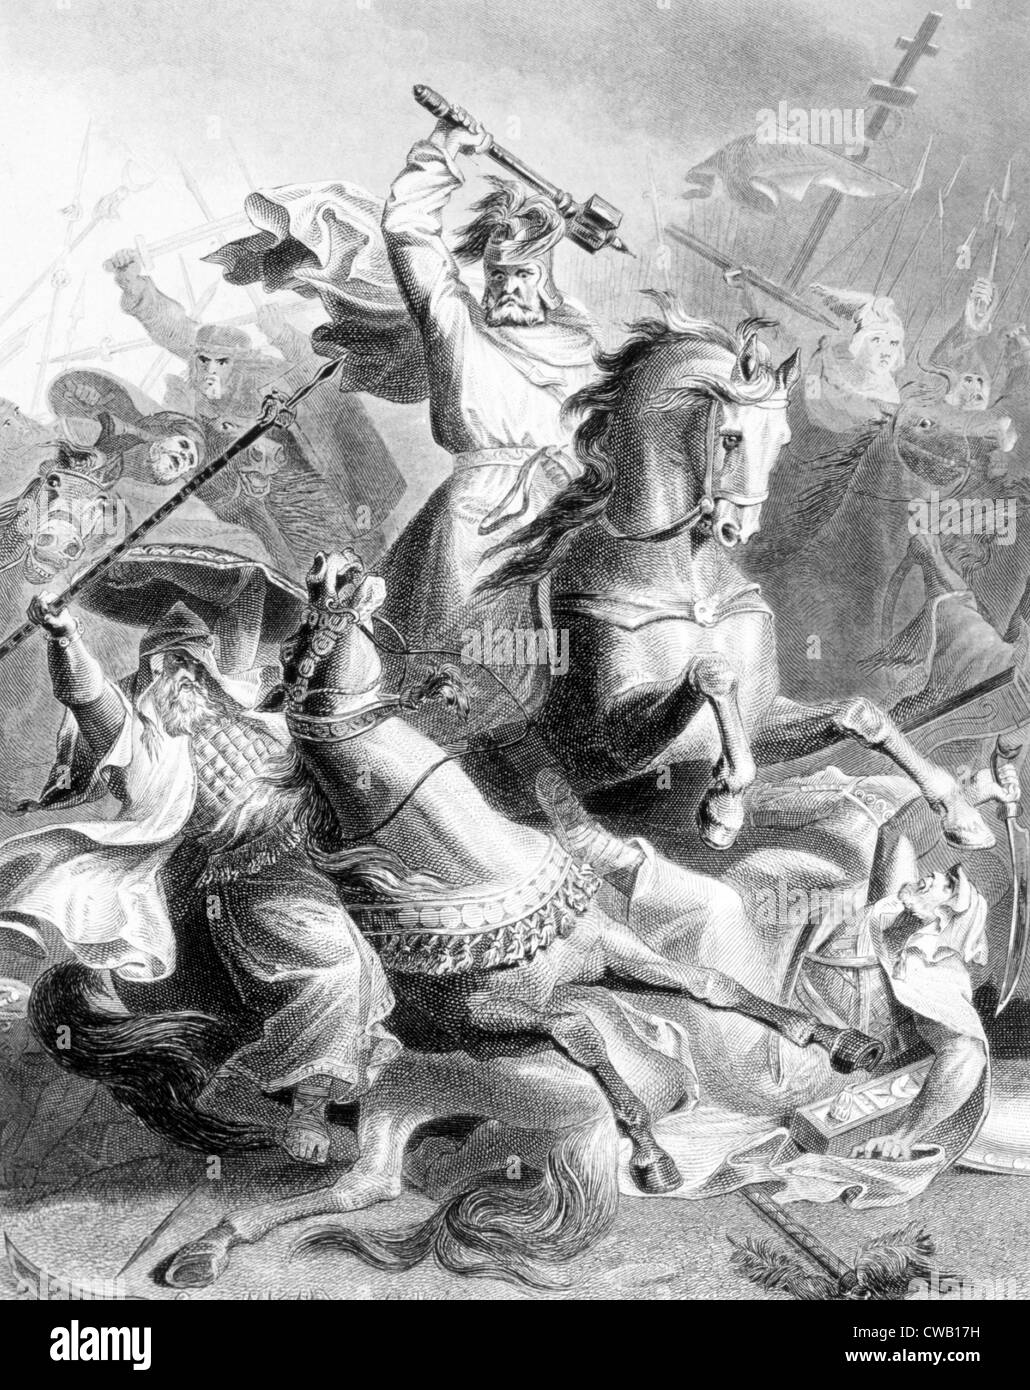 Charles Martel di arrestare la conquista da parte dei Mori in Europa alla battaglia di Tours, 732 D.C., incisione dopo il dipinto di G. Foto Stock